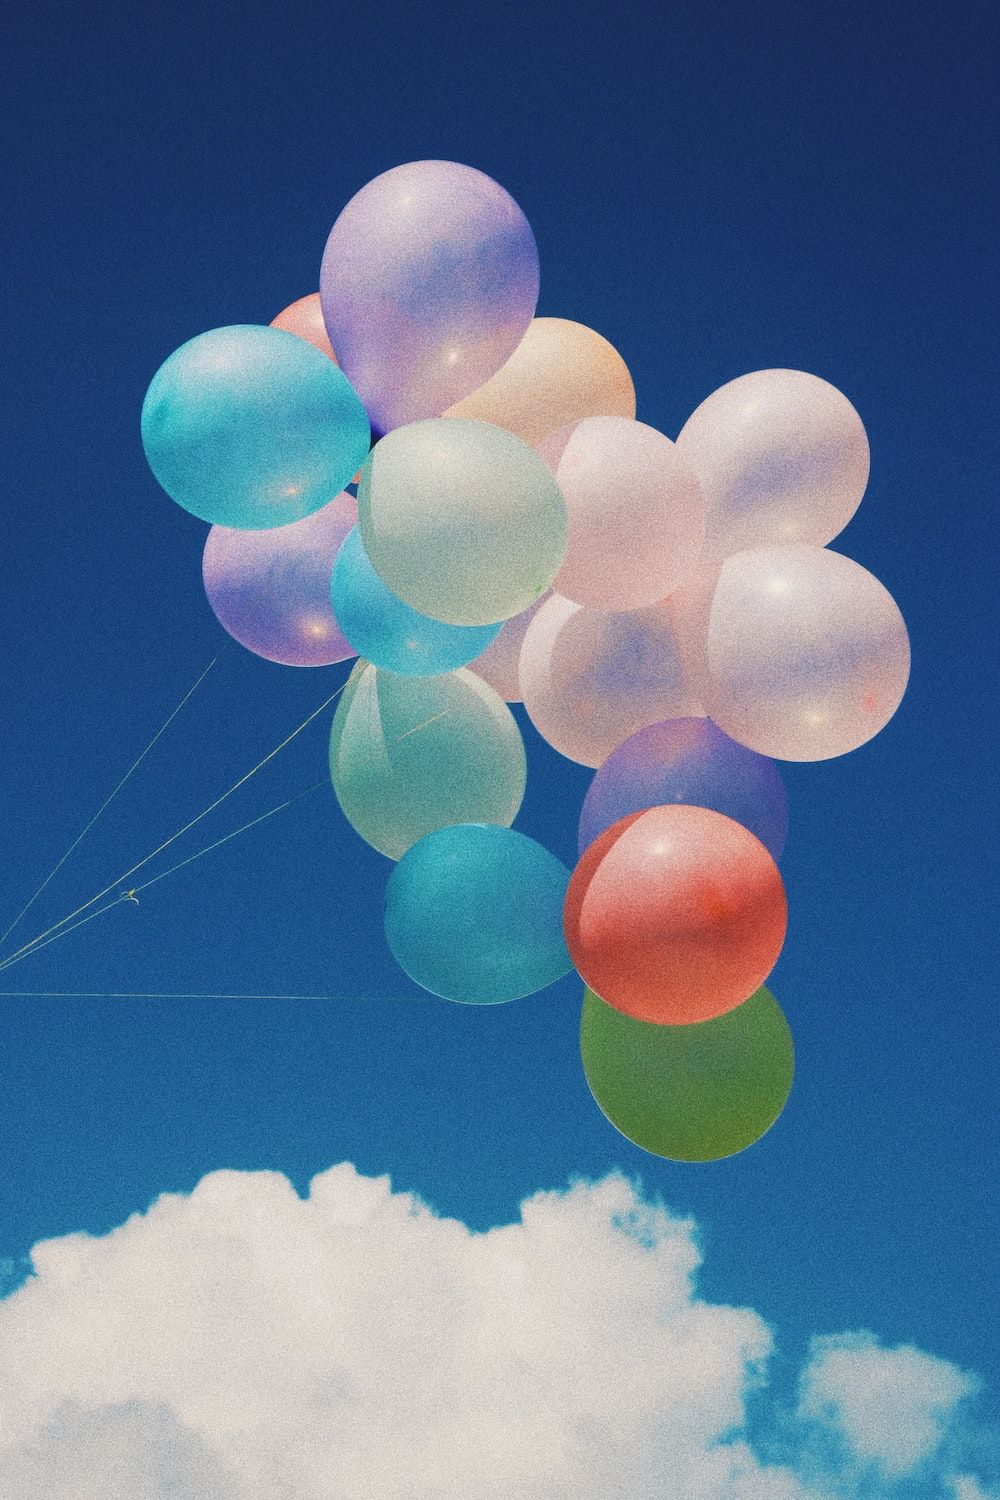  Luftballons Hintergrundbild 1000x1500. Beste Ballonbilder. Download Kostenlose Bilder auf